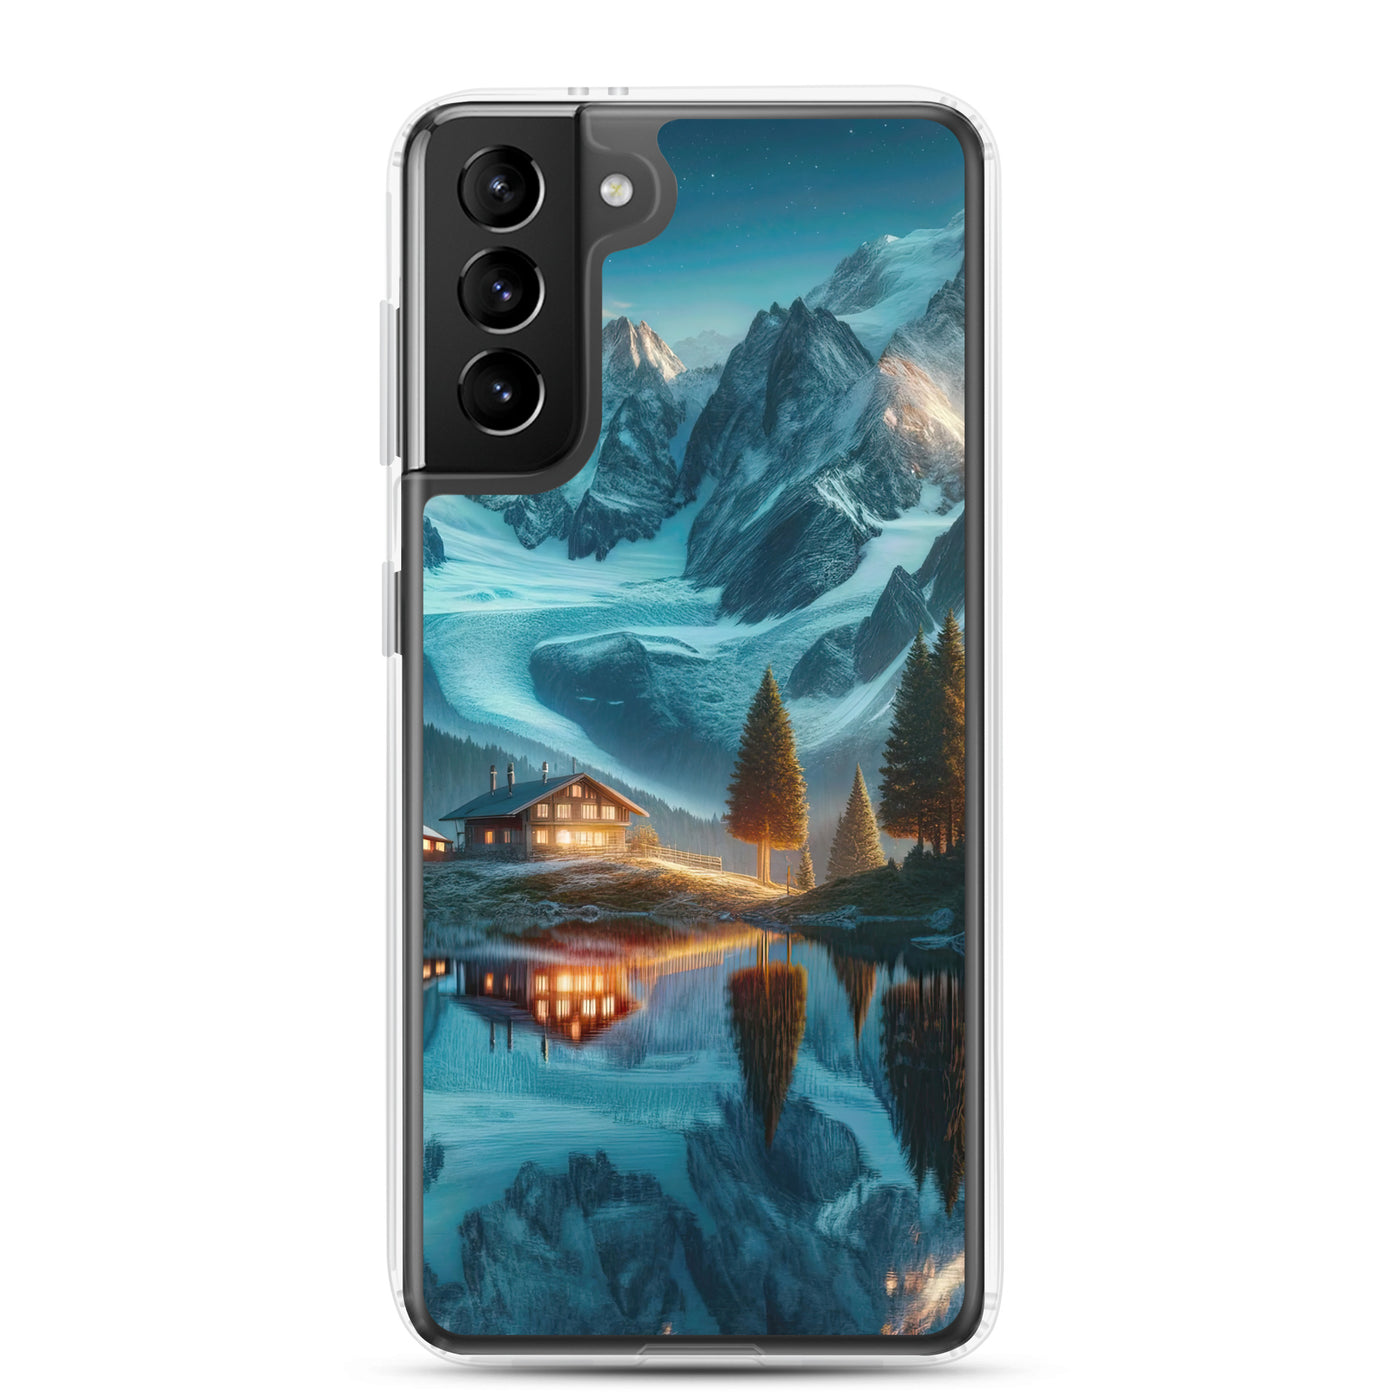 Stille Alpenmajestätik: Digitale Kunst mit Schnee und Bergsee-Spiegelung - Samsung Schutzhülle (durchsichtig) berge xxx yyy zzz Samsung Galaxy S21 Plus